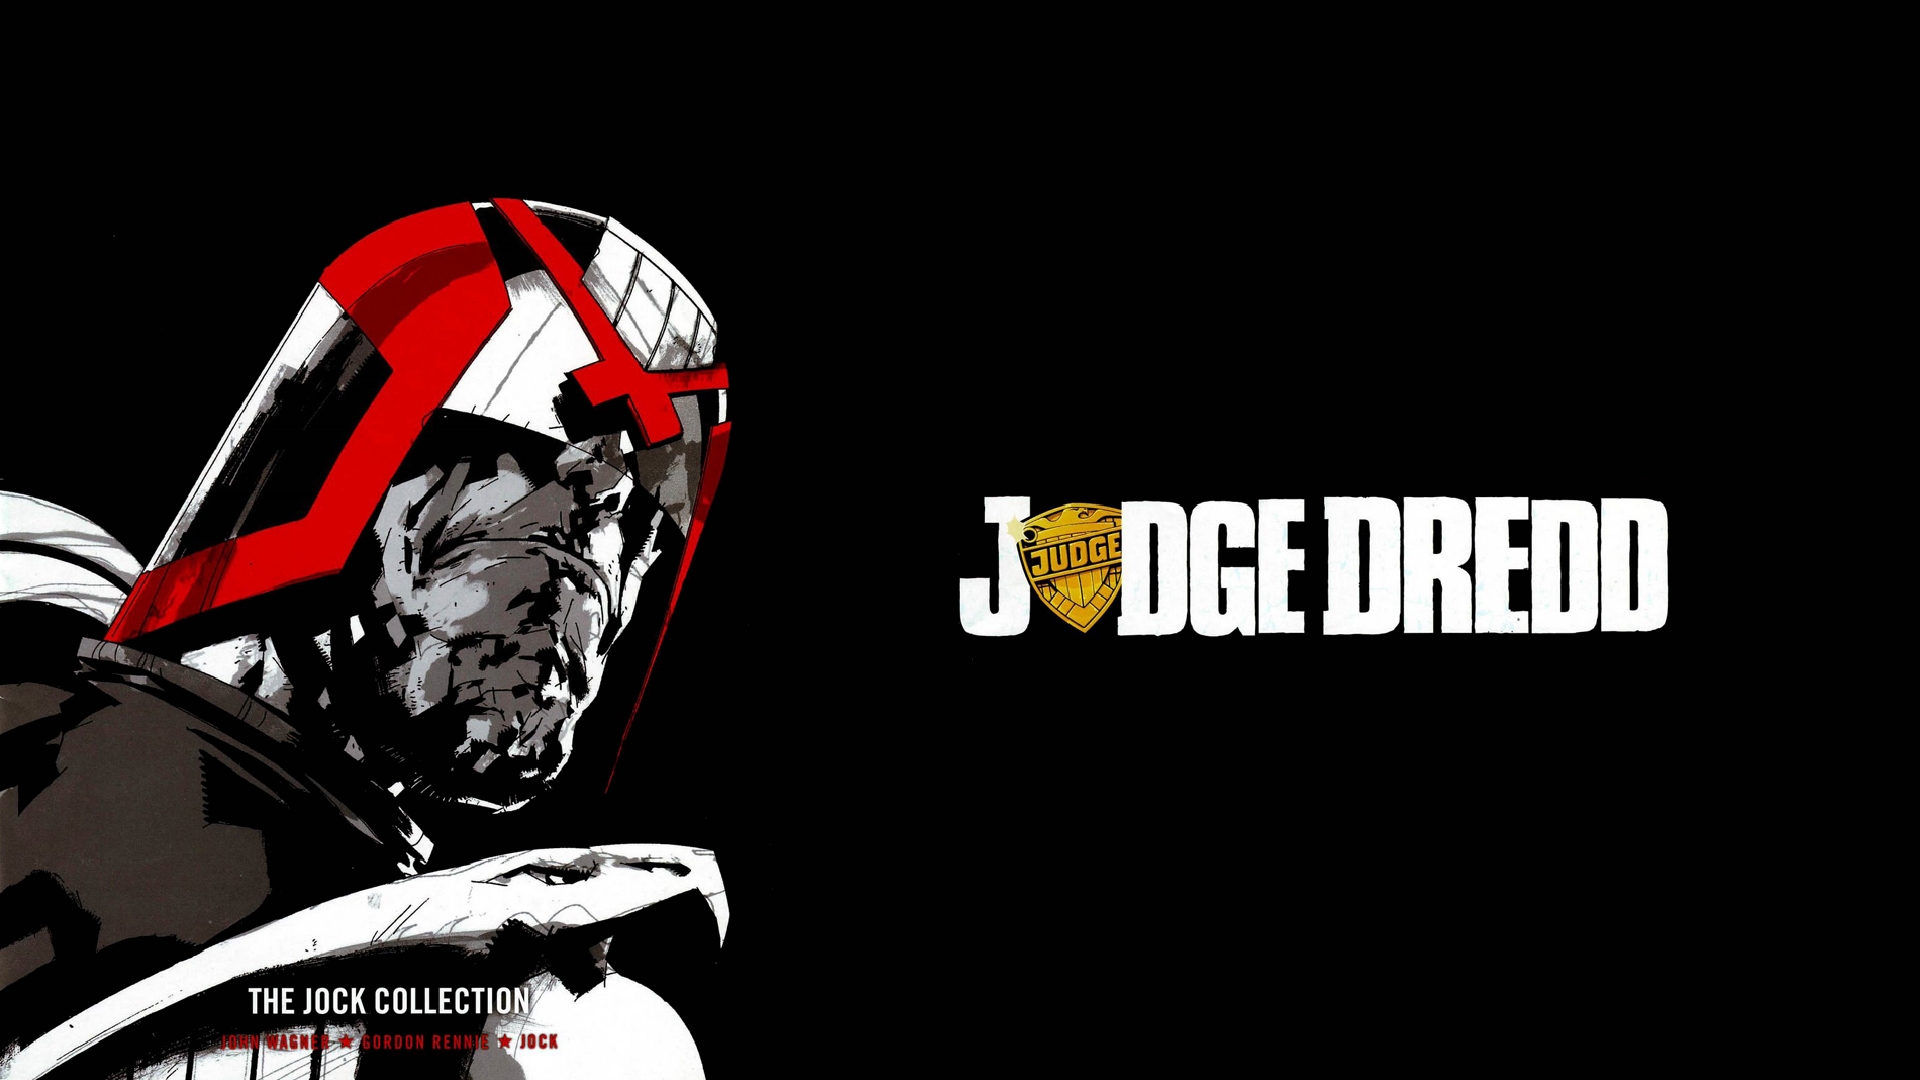 Judge Dredd HD Wallpaper | Background Image | 1920x1080 | ID:481309